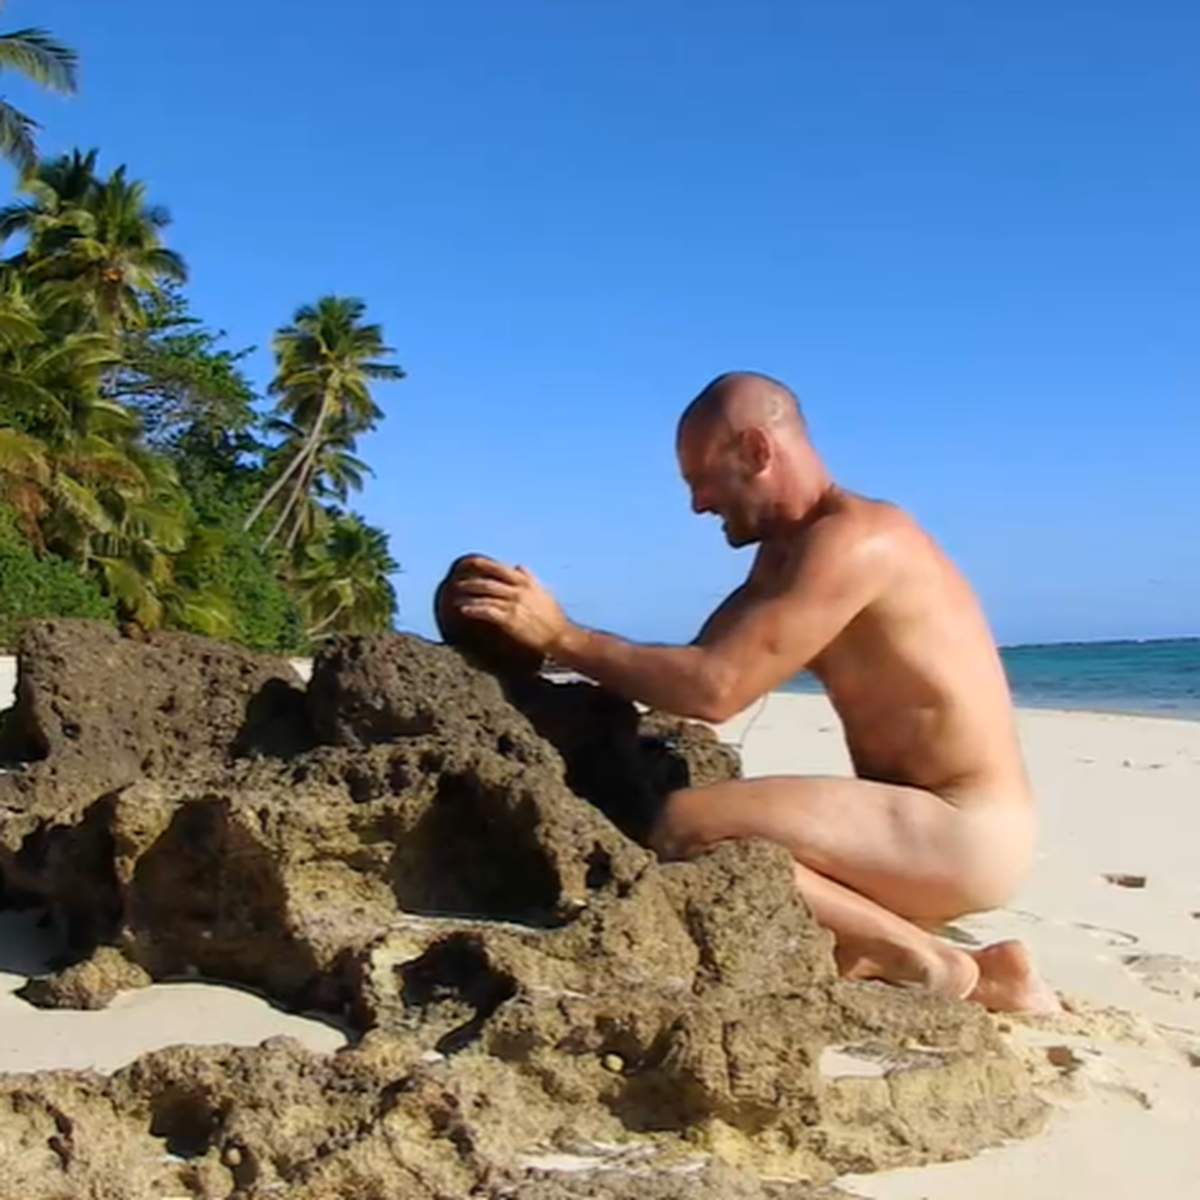 Naked on a desert island